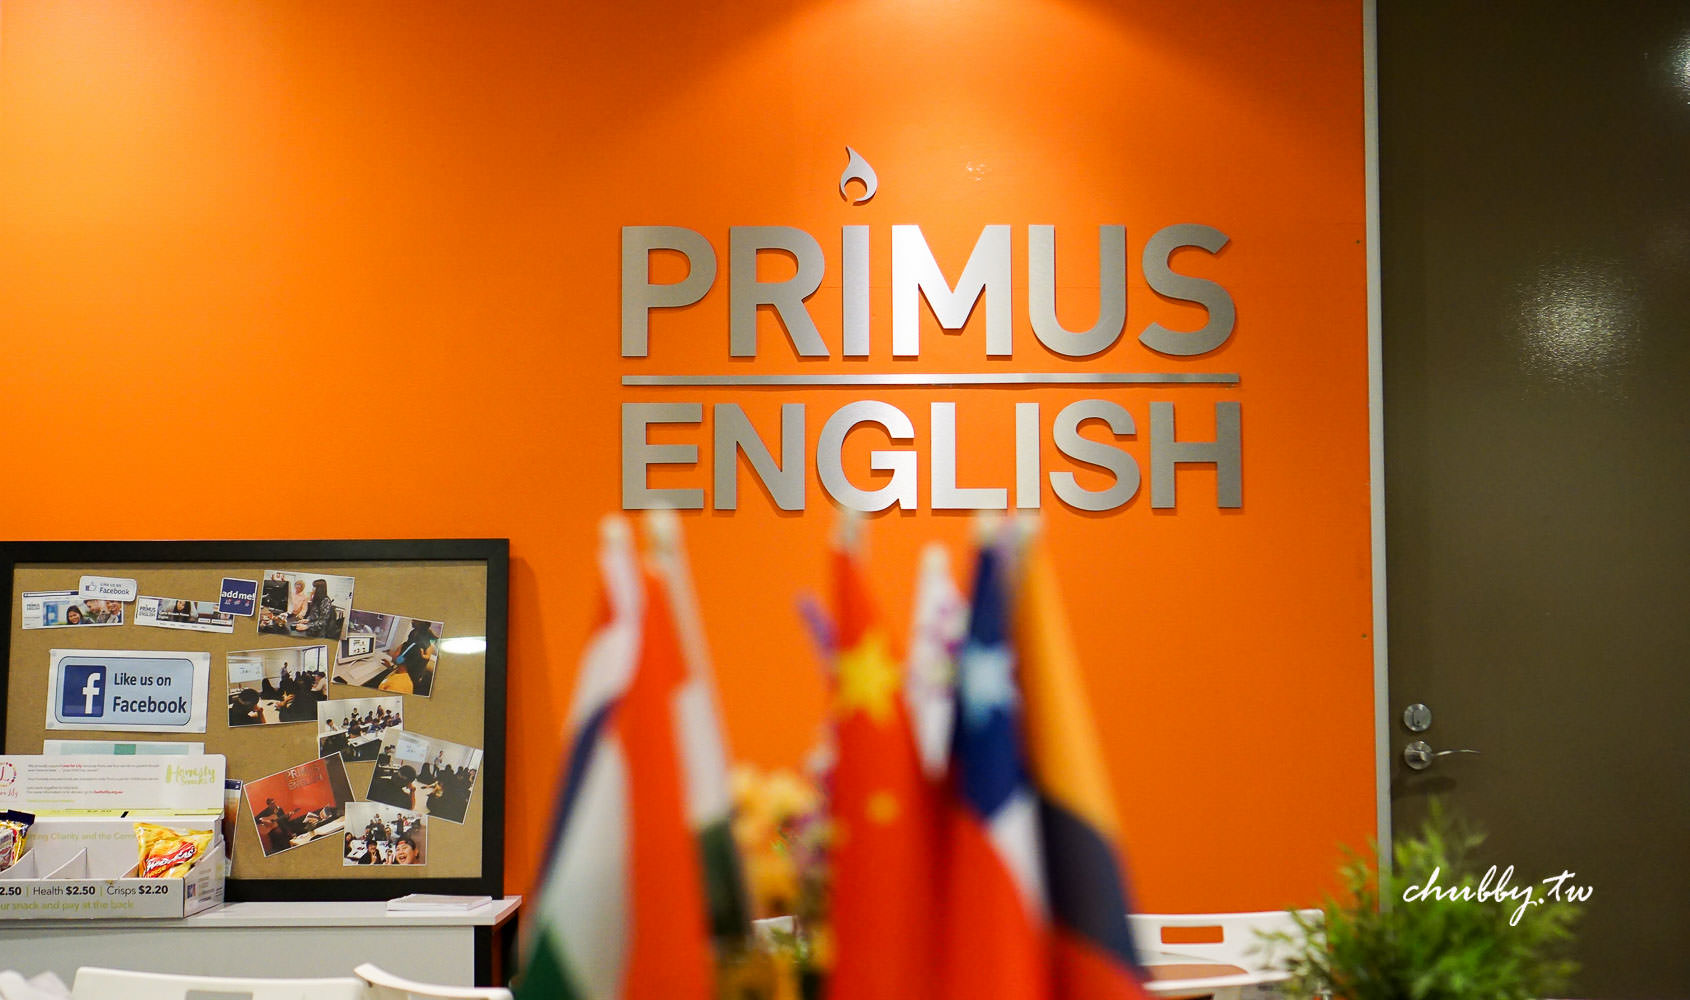 澳洲遊學│墨爾本語言學校Primus English心得